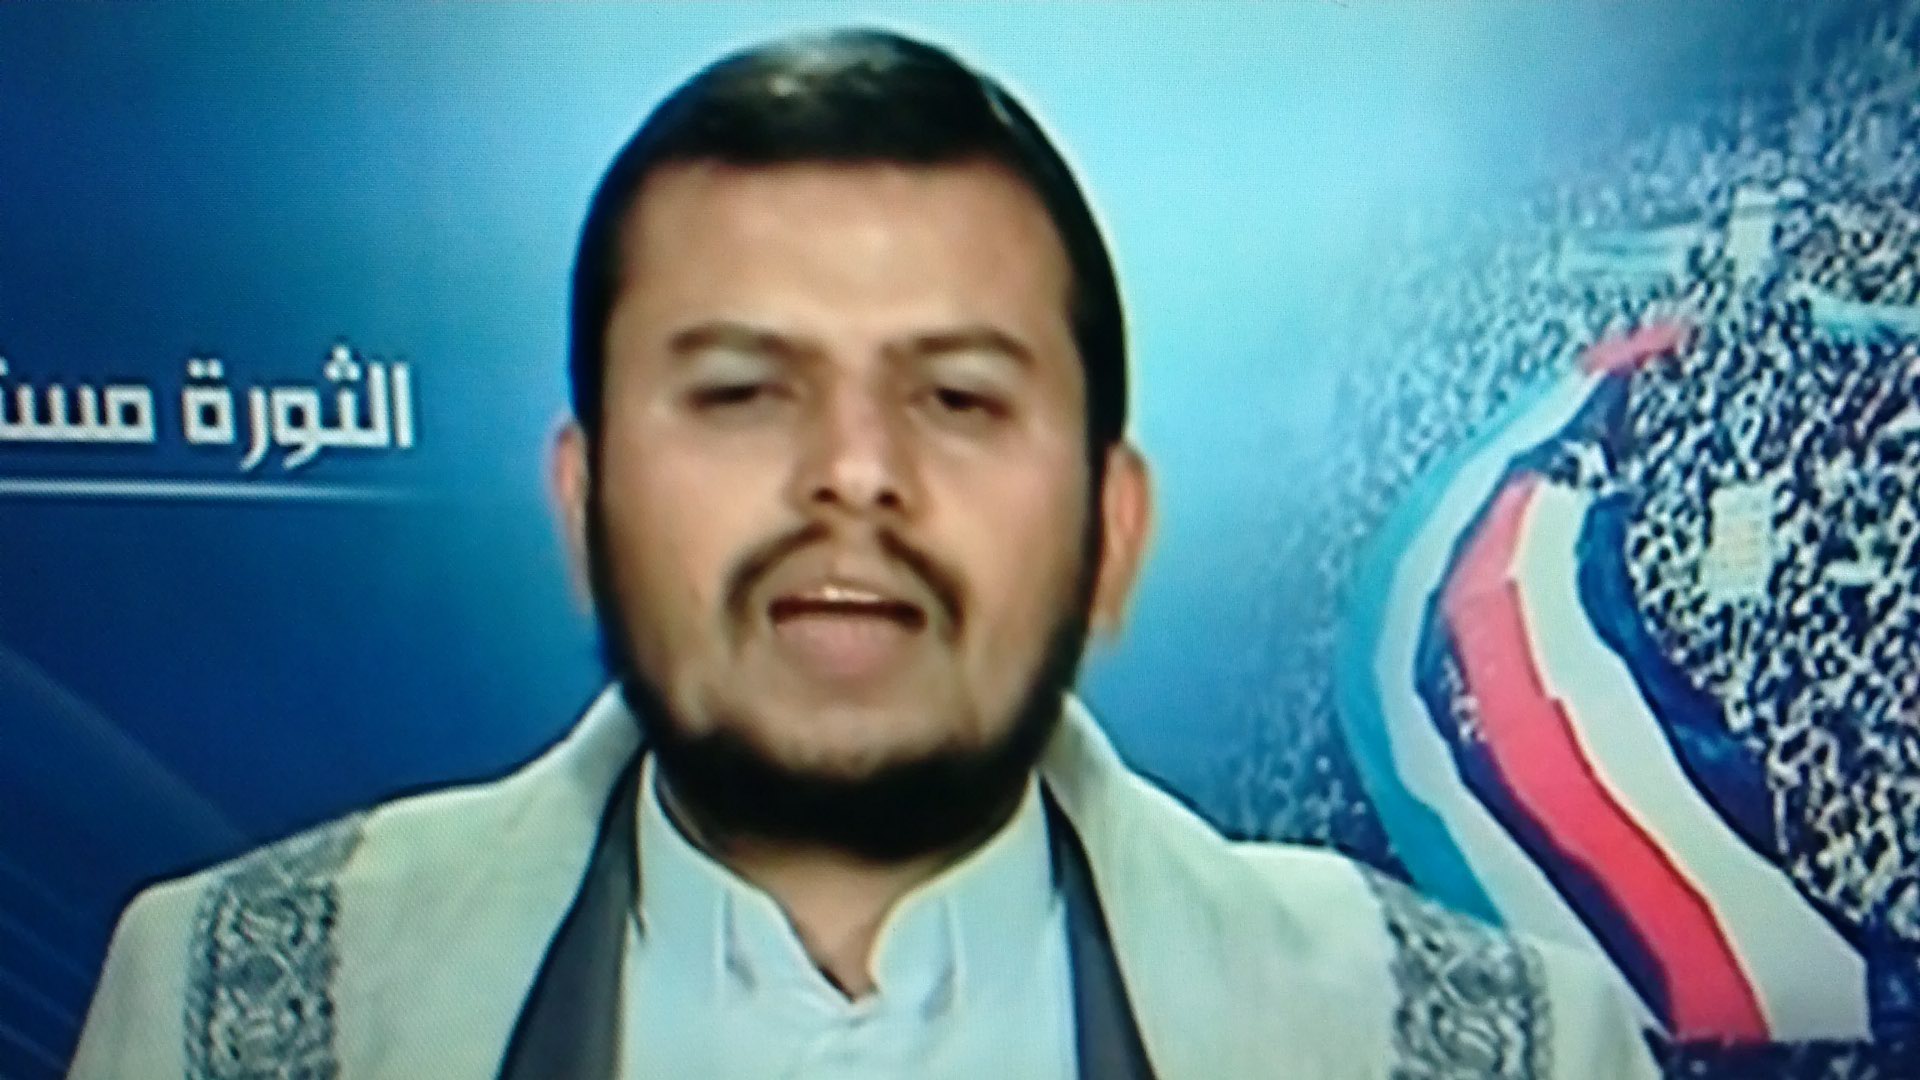 Yemen: Le chef de la milice chiite accuse le président de corruption